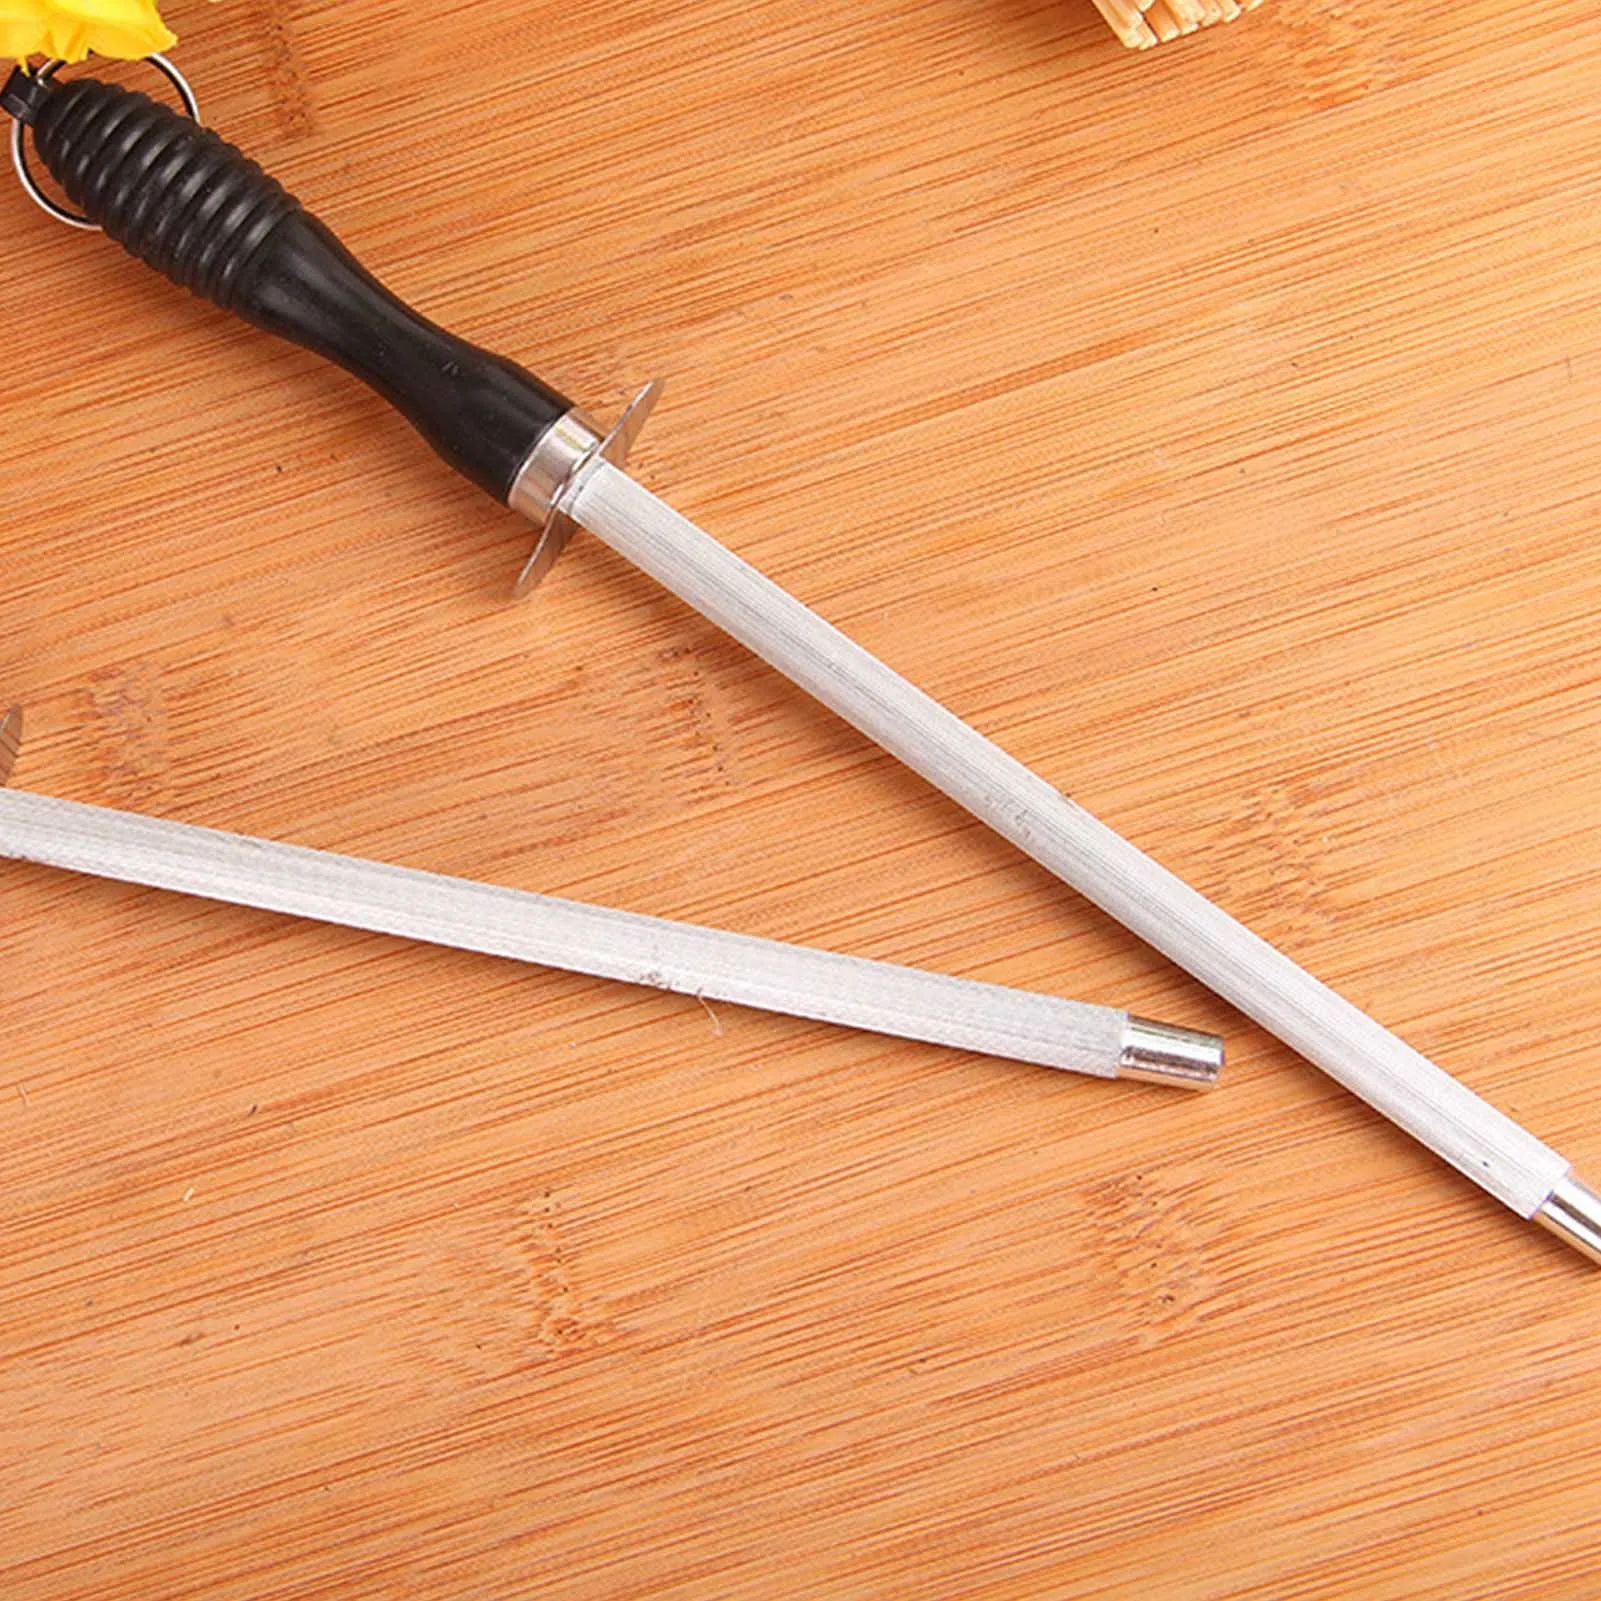 Кухонная ручная точилка для ножей Стержень без ржавчины Заточной стержень Точилка для поддержания ножей в остроте ПР Распродажа3